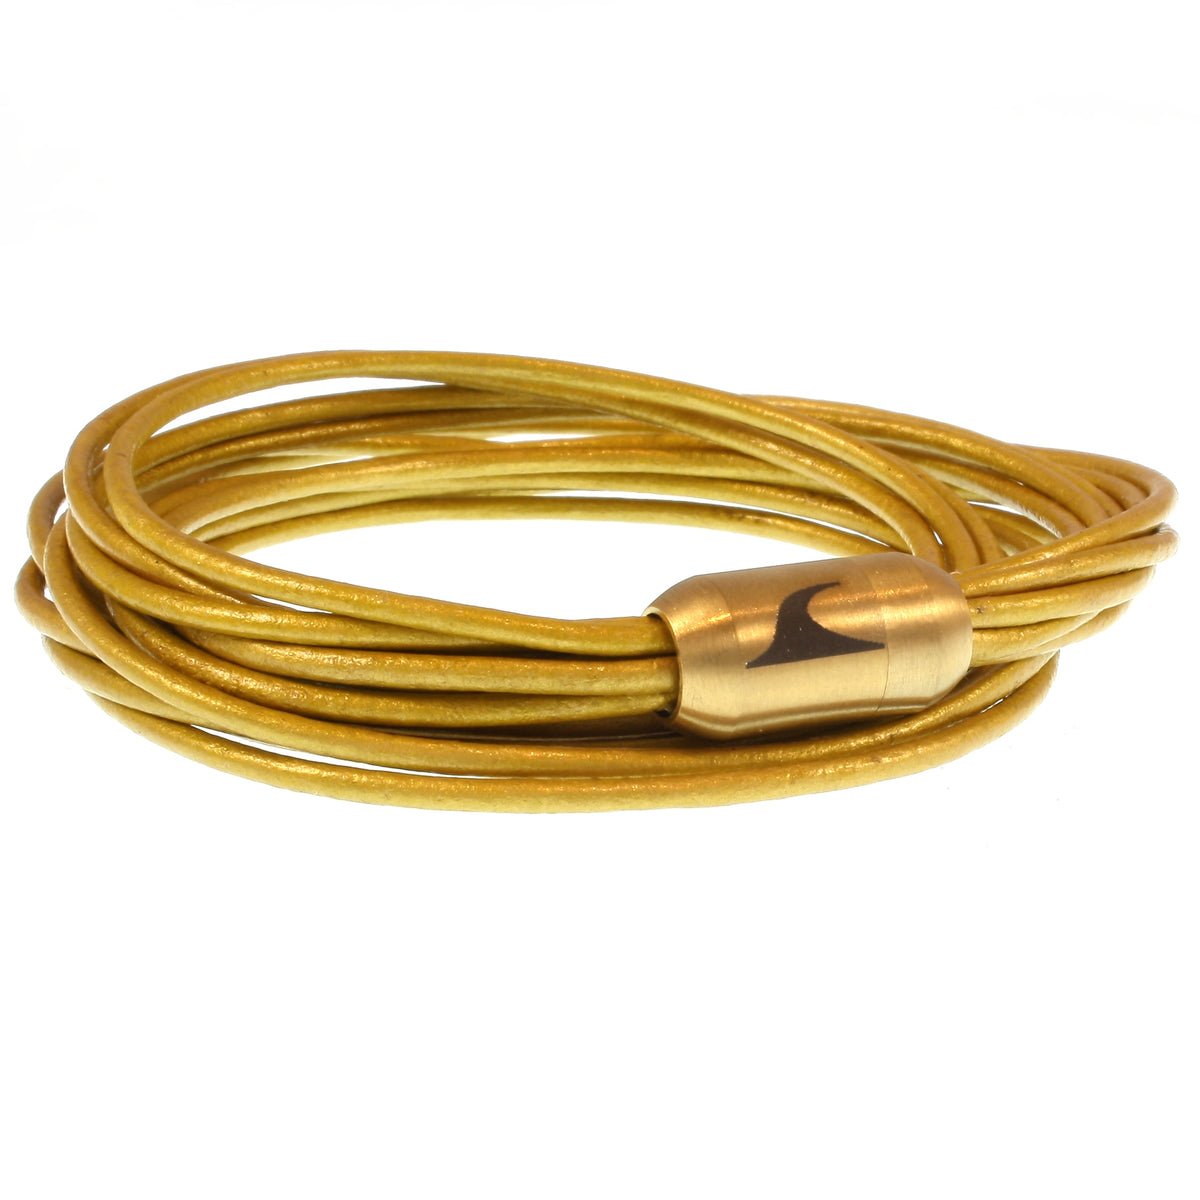 Damen-Leder-armband-fem2-gold-Edelstahlverschluss-vorn-wavepirate-shop-r